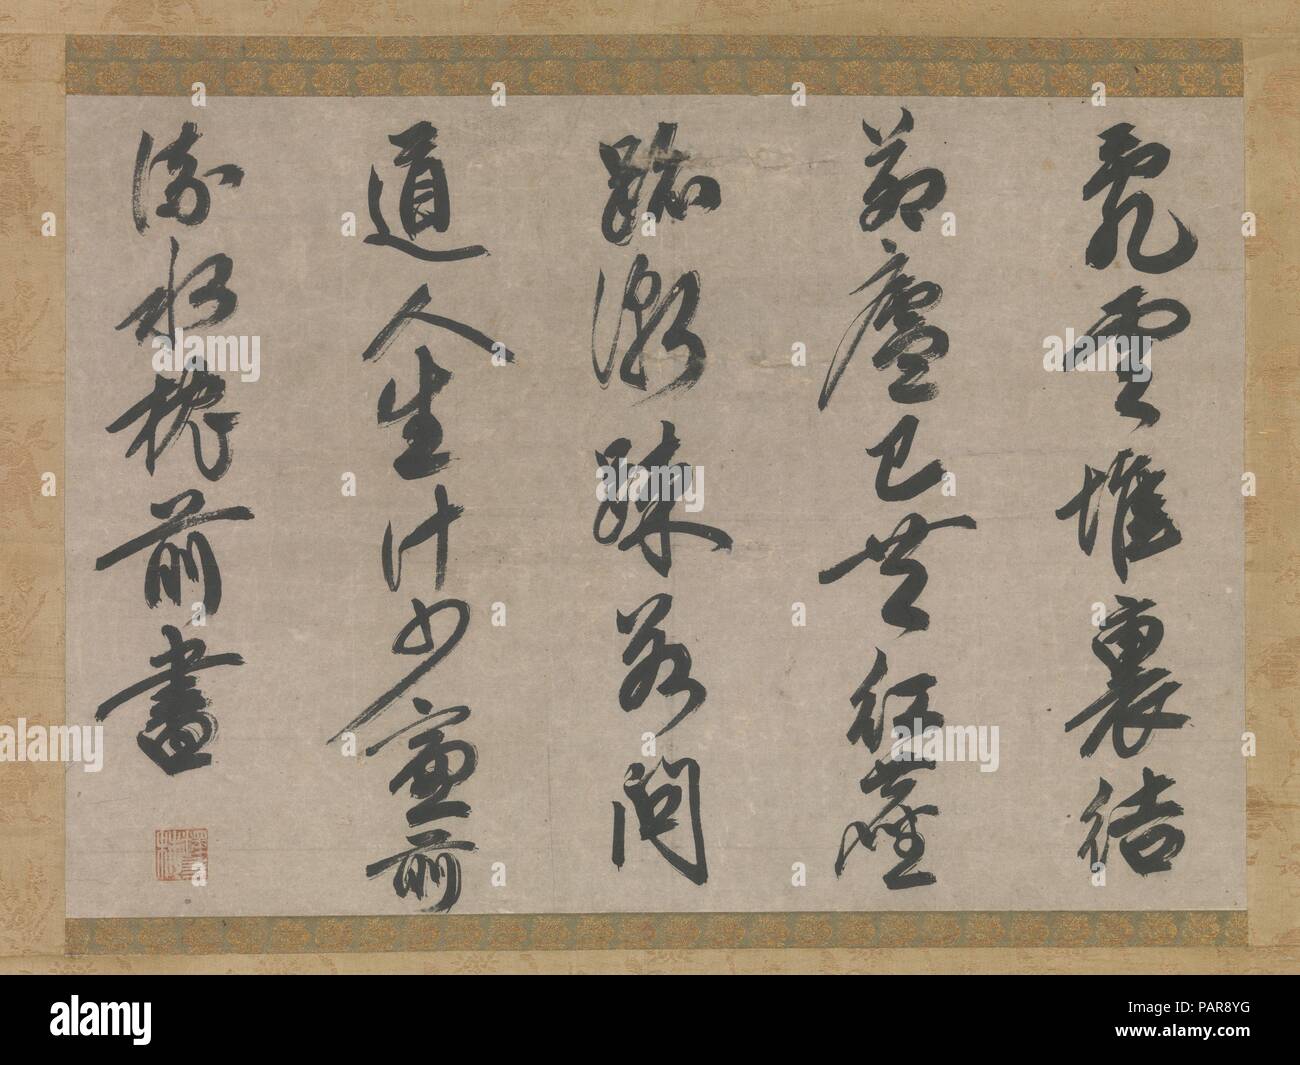 Gedicht zum Thema Leben der Mönche. Artist: sesson Yubai (Japanisch, 1290-1346). Kultur: Japan. Abmessungen: Bild: 16 x 23 3/8 in. (40,6 x 59,4 cm) Insgesamt mit Montage: 51 x 29 cm. (129,5 x 74 cm) Insgesamt mit den Knöpfen: 51 x 31 3/16 in. (129,5 x 79,2 cm). Datum: 14. Yubai Sesson, einer der gelungensten Literaten Zen Mönche, war sowohl in Kalligraphie geübt und in der chinesischen Poesie gelernt. Nach dem Studium mit der chinesischen Emigranten Mönch Yishan Yining (Japanisch: Margaux Ichinei, 1247-1317), verbrachte er 23 Jahre in China, und seine Kalligraphie zeigt den Einfluss der neuesten Stockfoto